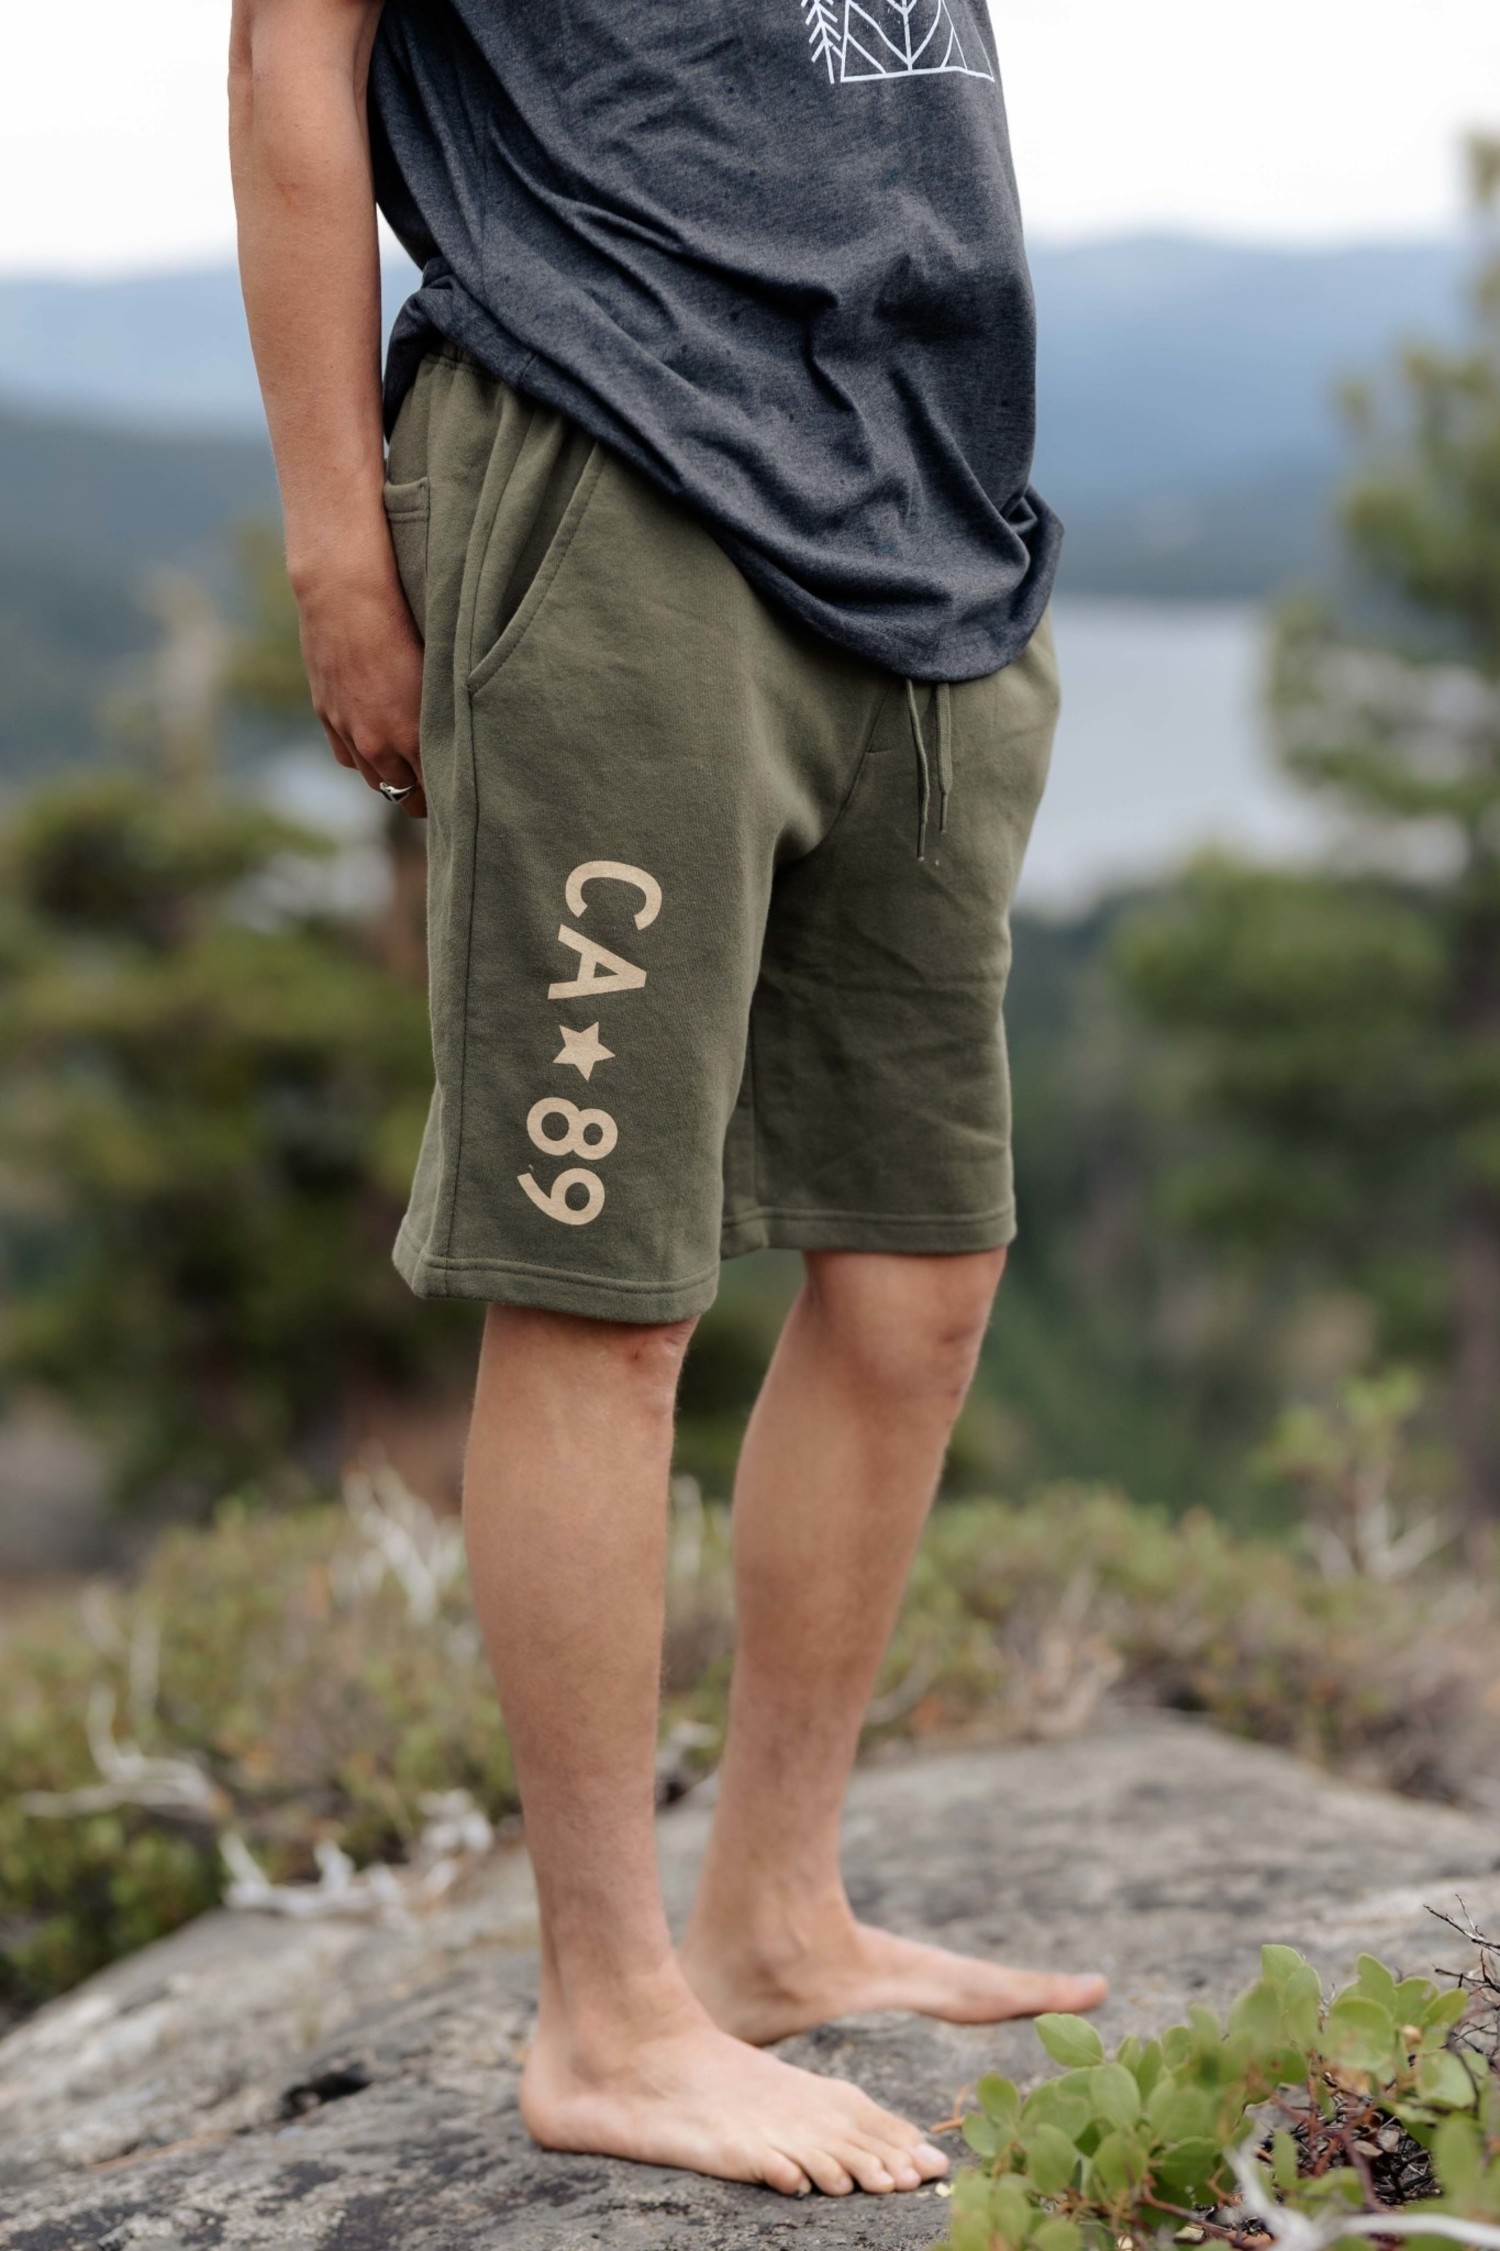 Organic Cotton Sweat Shorts – MxT 2510